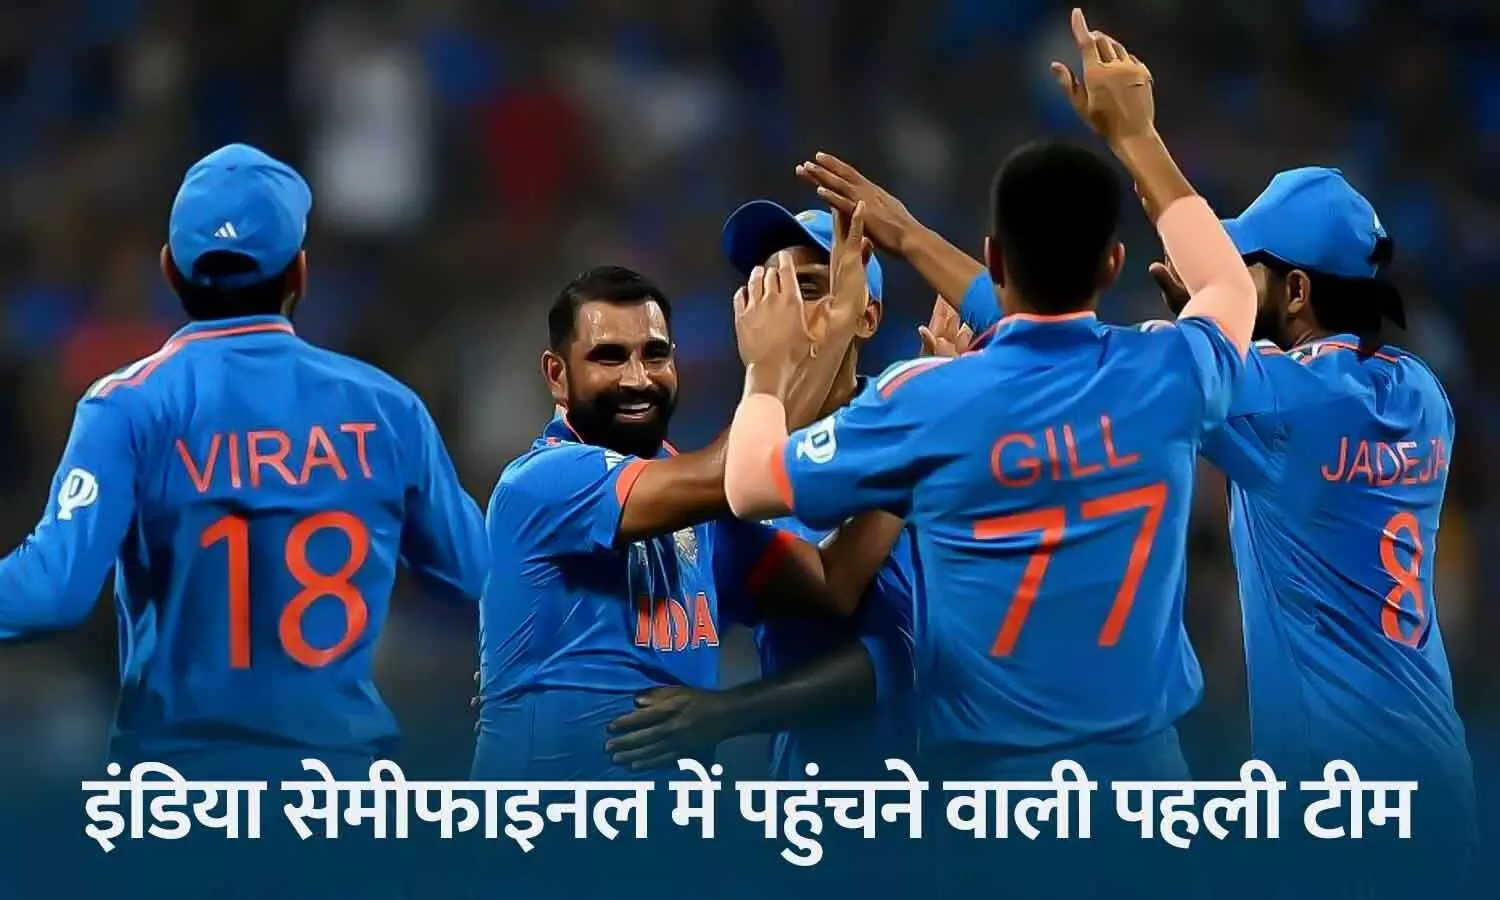 वर्ल्ड कप 2023 के सेमीफाइनल में भारत की एंट्री: श्रीलंका को 302 रन से हराया, शमी को 5, सिराज को 3 विकेट मिले; गिल, कोहली, अय्यर शतक से चूके